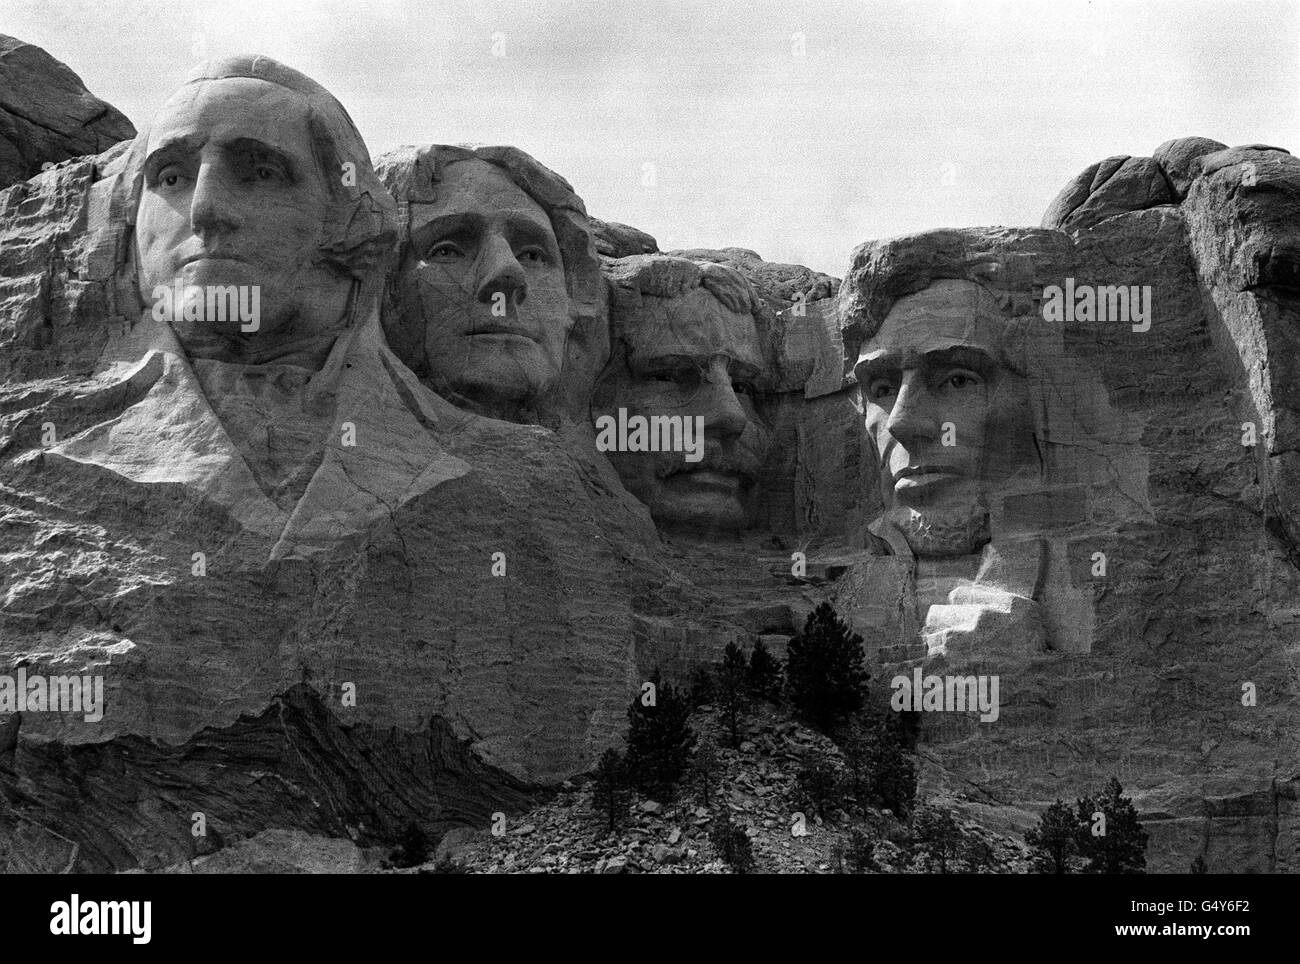 Mount Rushmore, le temple de la démocratie de l'Amérique « écrit » en sculpture de montagne dans les Black Hills du Dakota du Sud. Les chefs de rock de quatre anciens présidents - Washington, Jefferson, Roosevelt et Lincoln sont un monument national de l'histoire américaine. * ils sont un témoignage remarquable du travail du sculpteur Gutzon Borglum qui a lancé le projet de colleuse en 1927. Chaque tête mesure 60 pi de hauteur et est mise à l'échelle pour les hommes mesurant 465 pi de hauteur si entièrement sculptée. Chaque nez mesure 20 pi de long, les yeux 11 pi de large et la mole de Lincoln est de 15 pouces de large. Banque D'Images